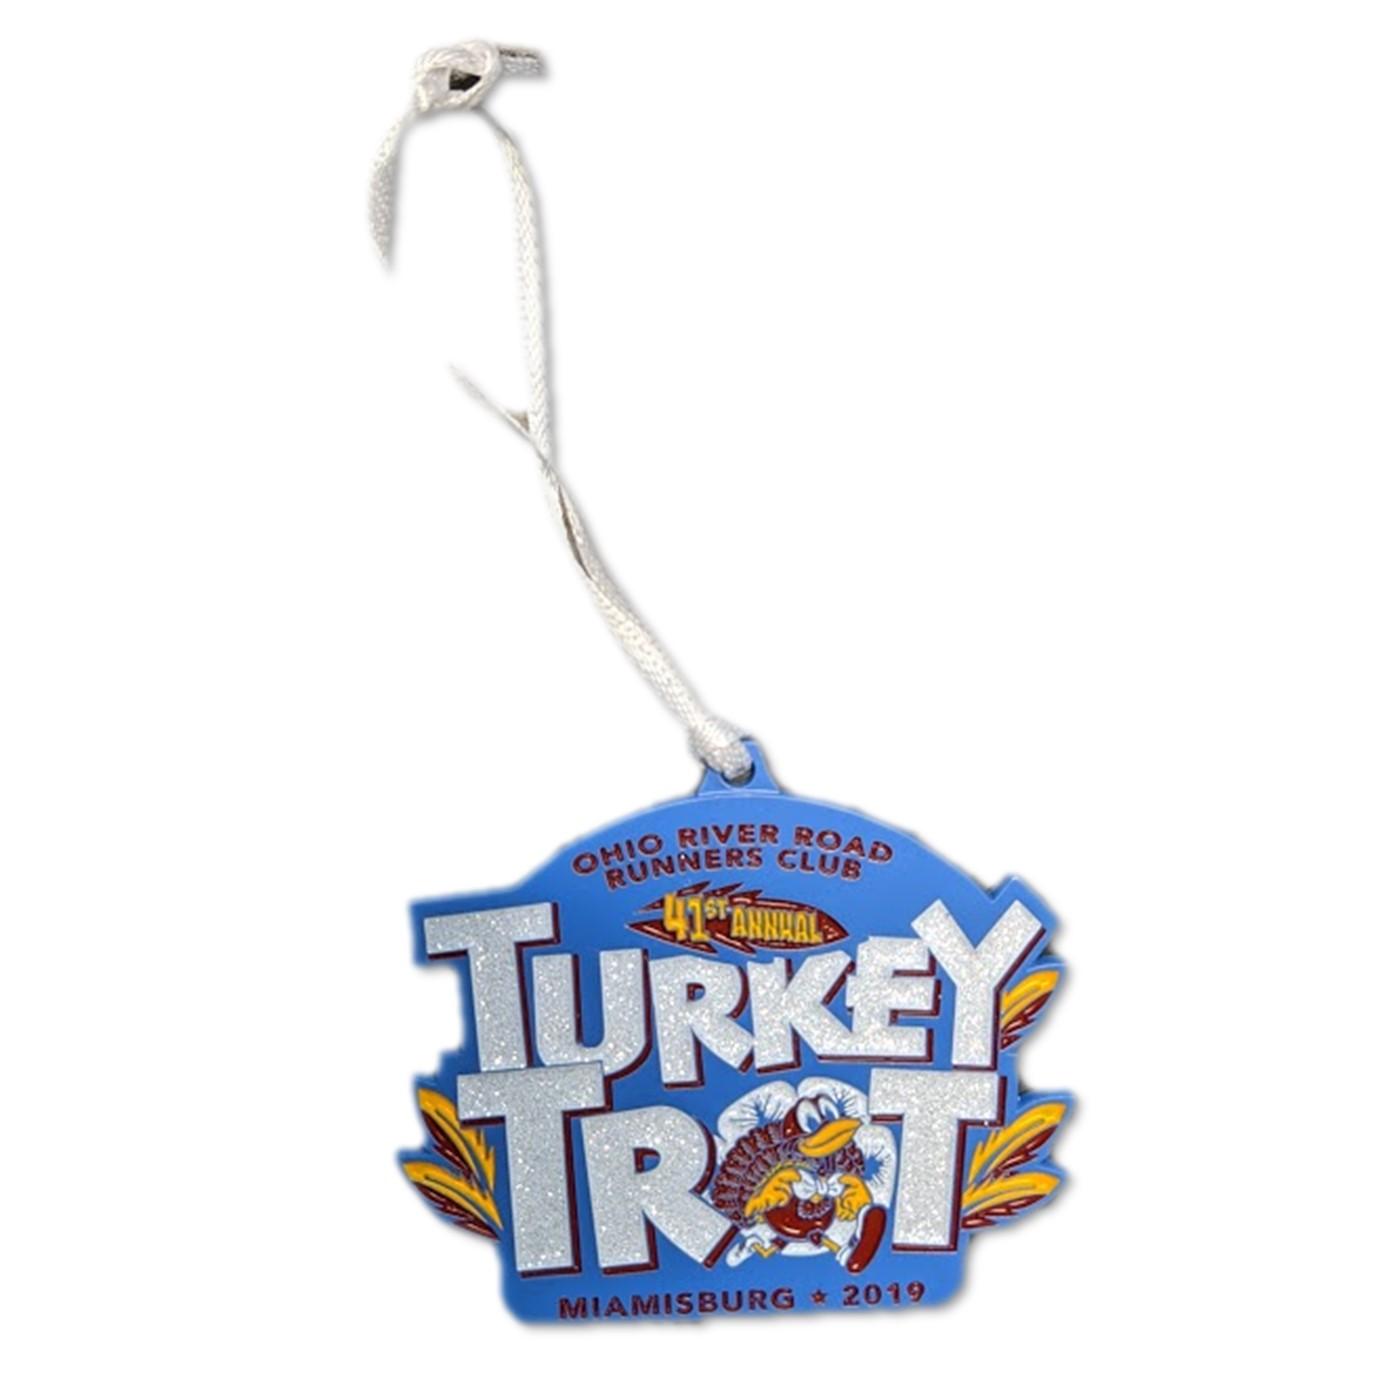  2019 Turkey Trot Ornament